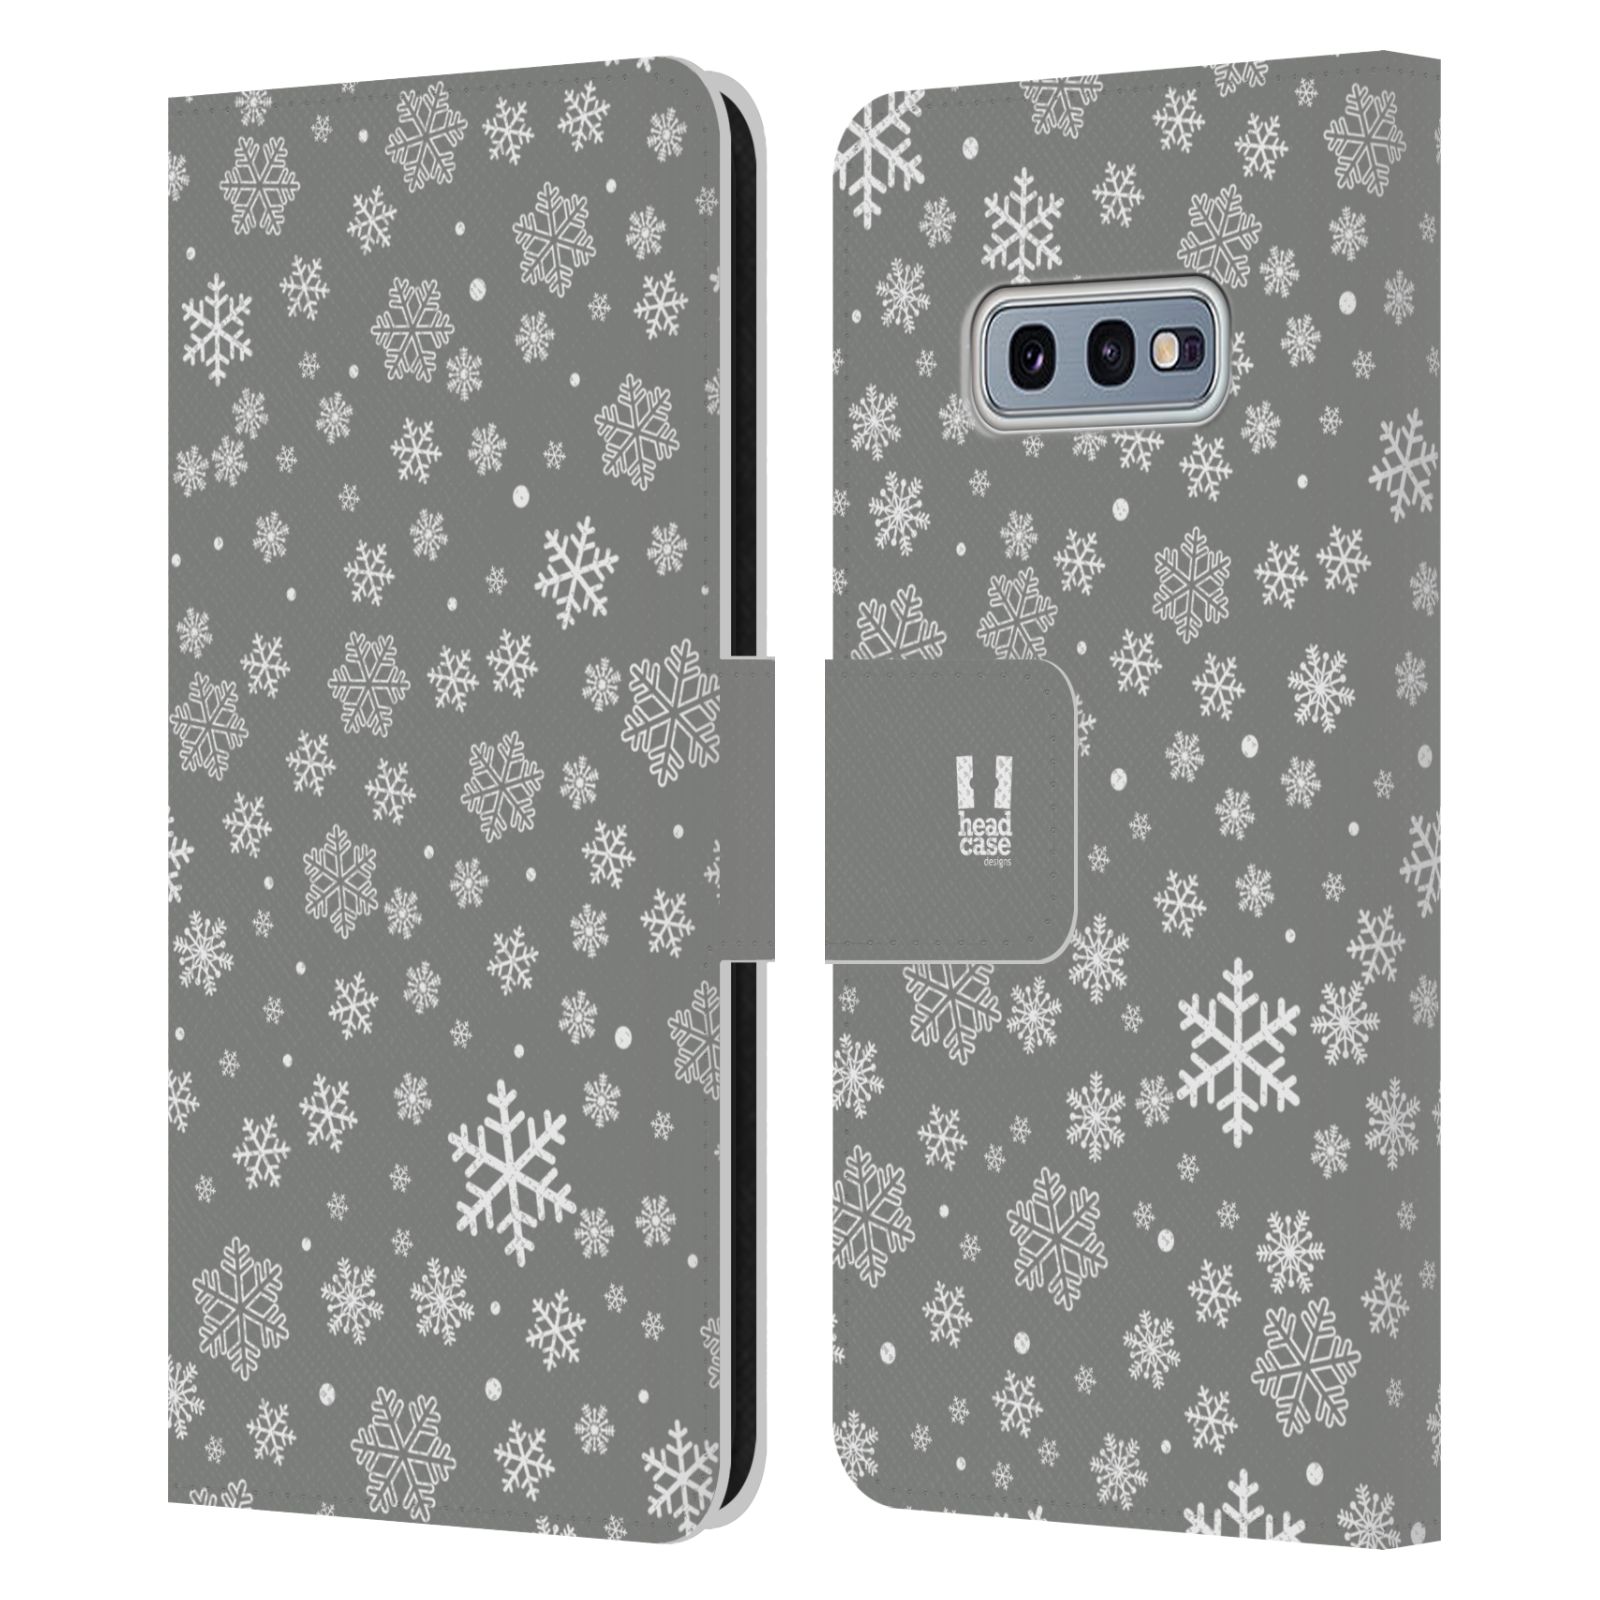 Pouzdro HEAD CASE na mobil Samsung Galaxy S10e stříbrné vzory sněžná vločka